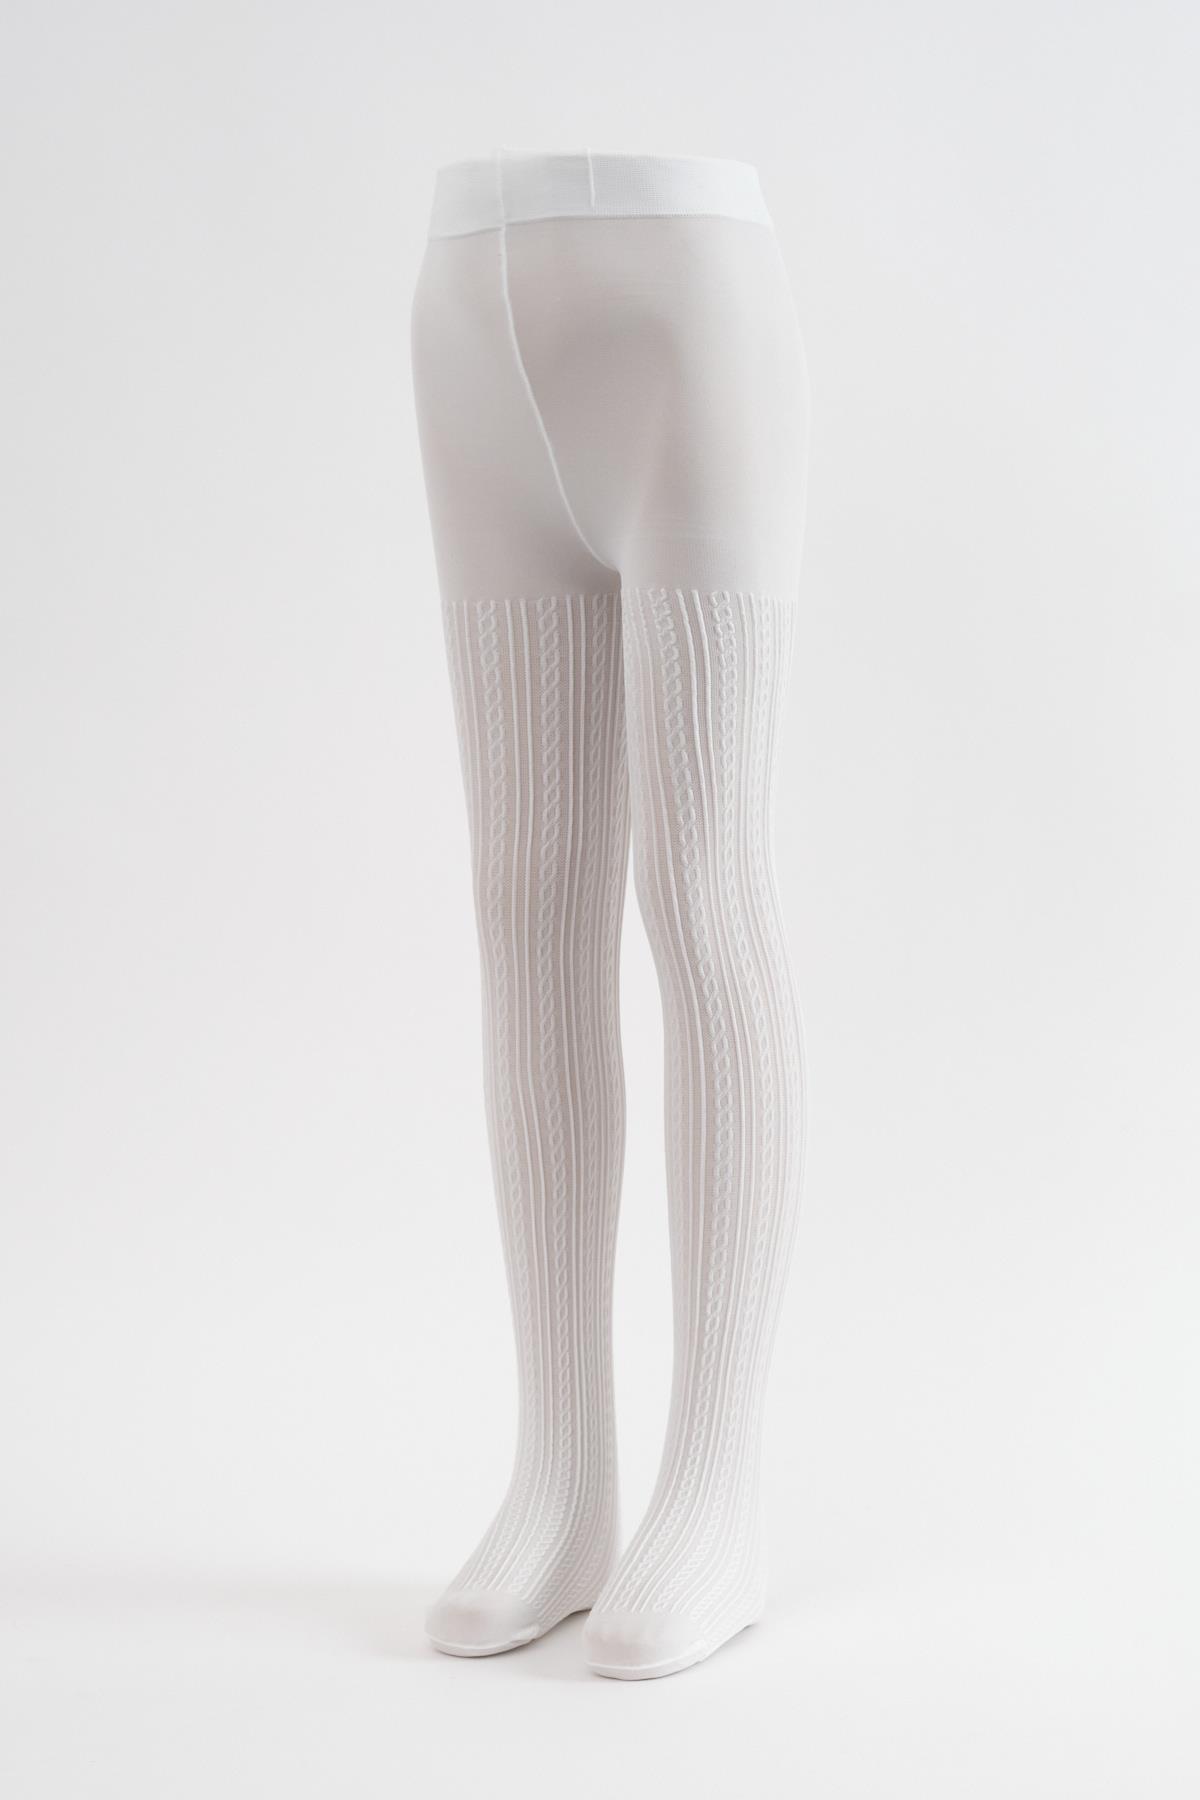 Katia & Bony | 23 Nisan'a Özel İndirimli Külotlu Çorap Modelleri ve  Fiyatları